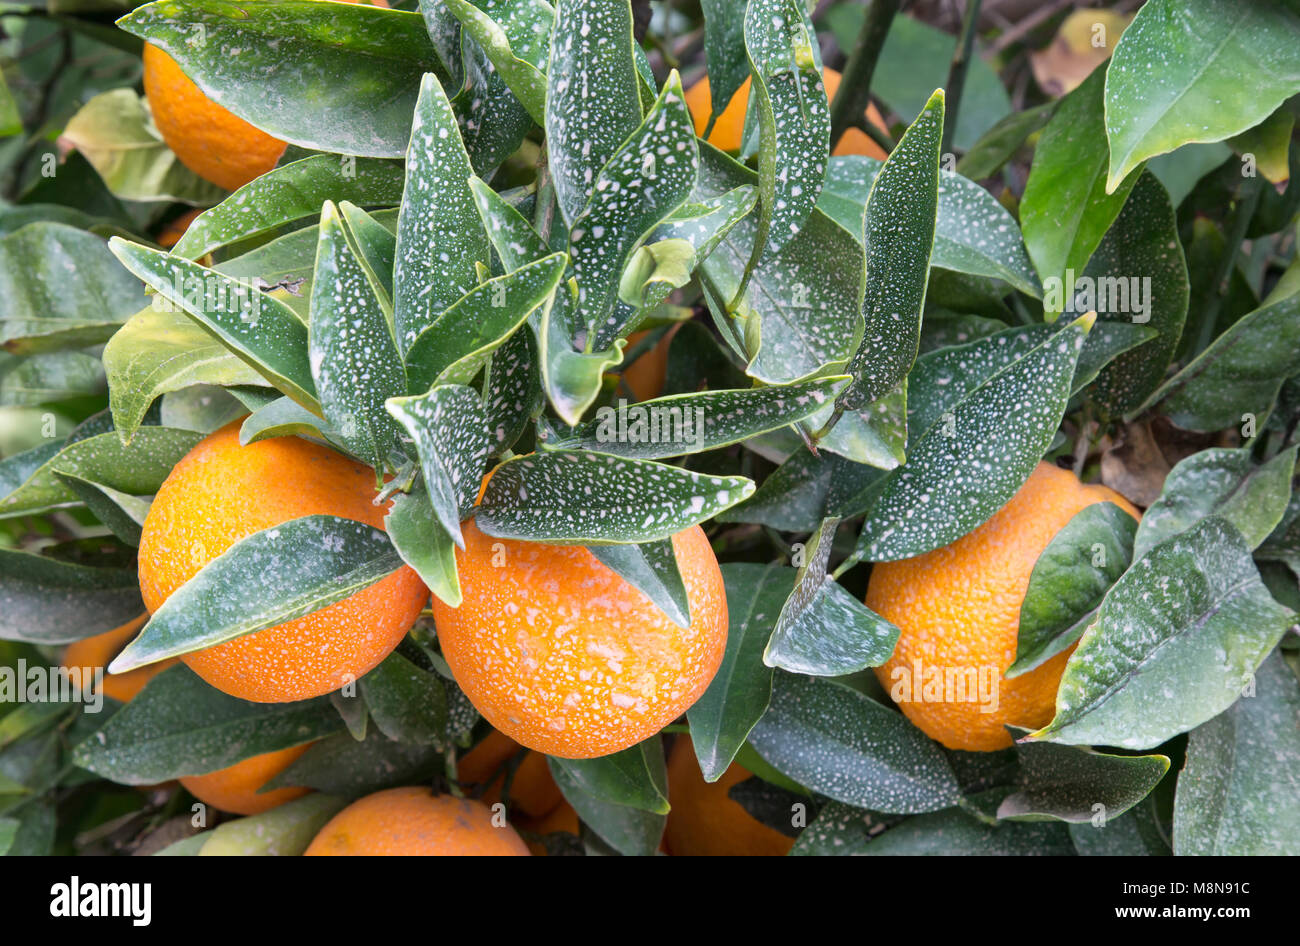 Fungicida agricoli trattati taglierina nucellar Valencia Orange Orchard "Citrus sinensis". fungicida/protezione antiparassitaria, California. Foto Stock